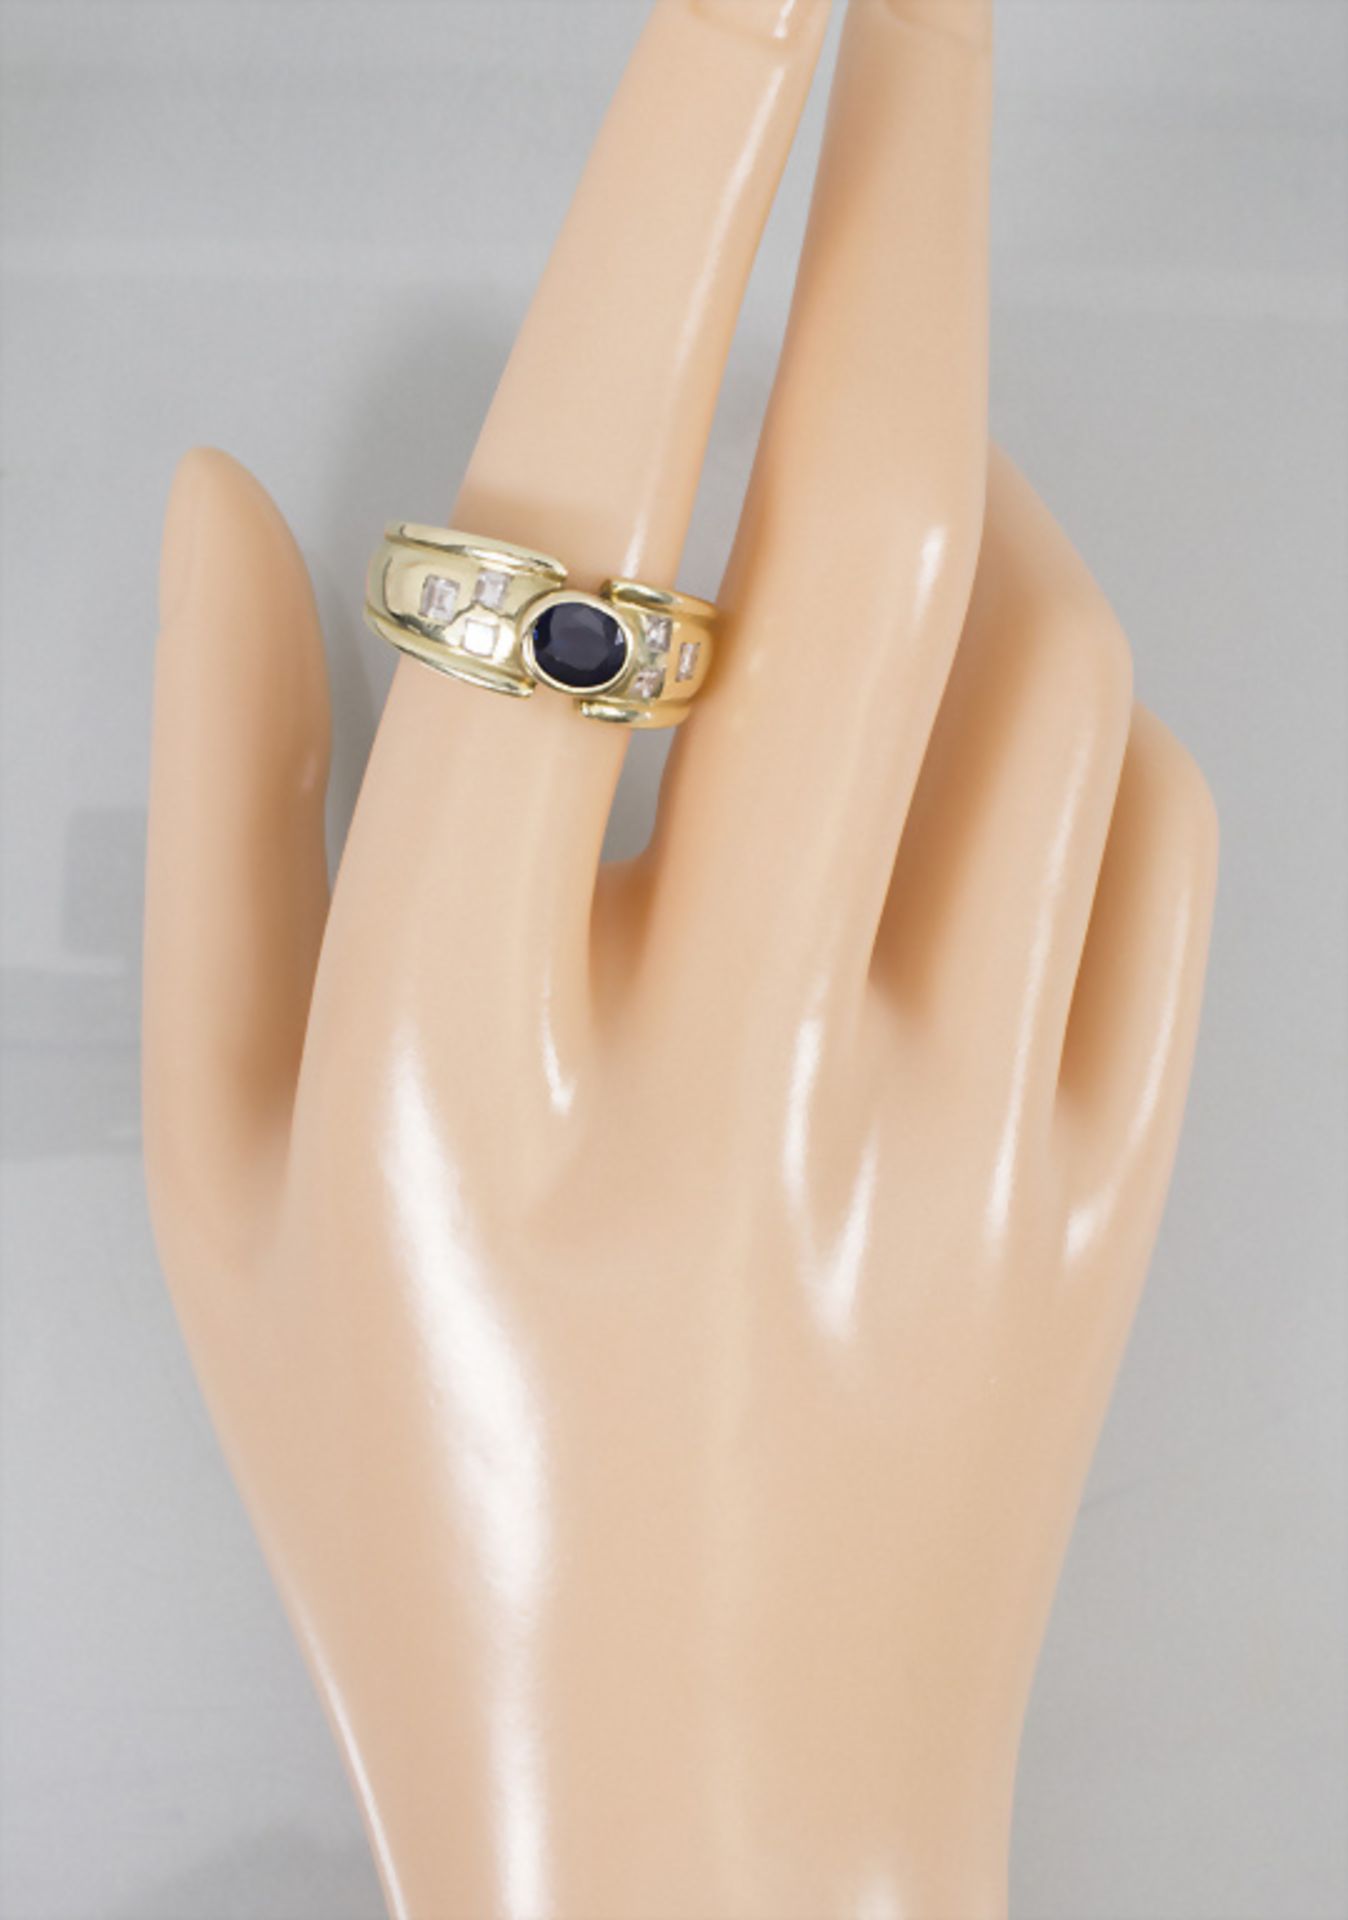 Damenring mit Saphir und Diamanten / A ladies 14k gold ring with sapphire and diamonds - Bild 5 aus 6